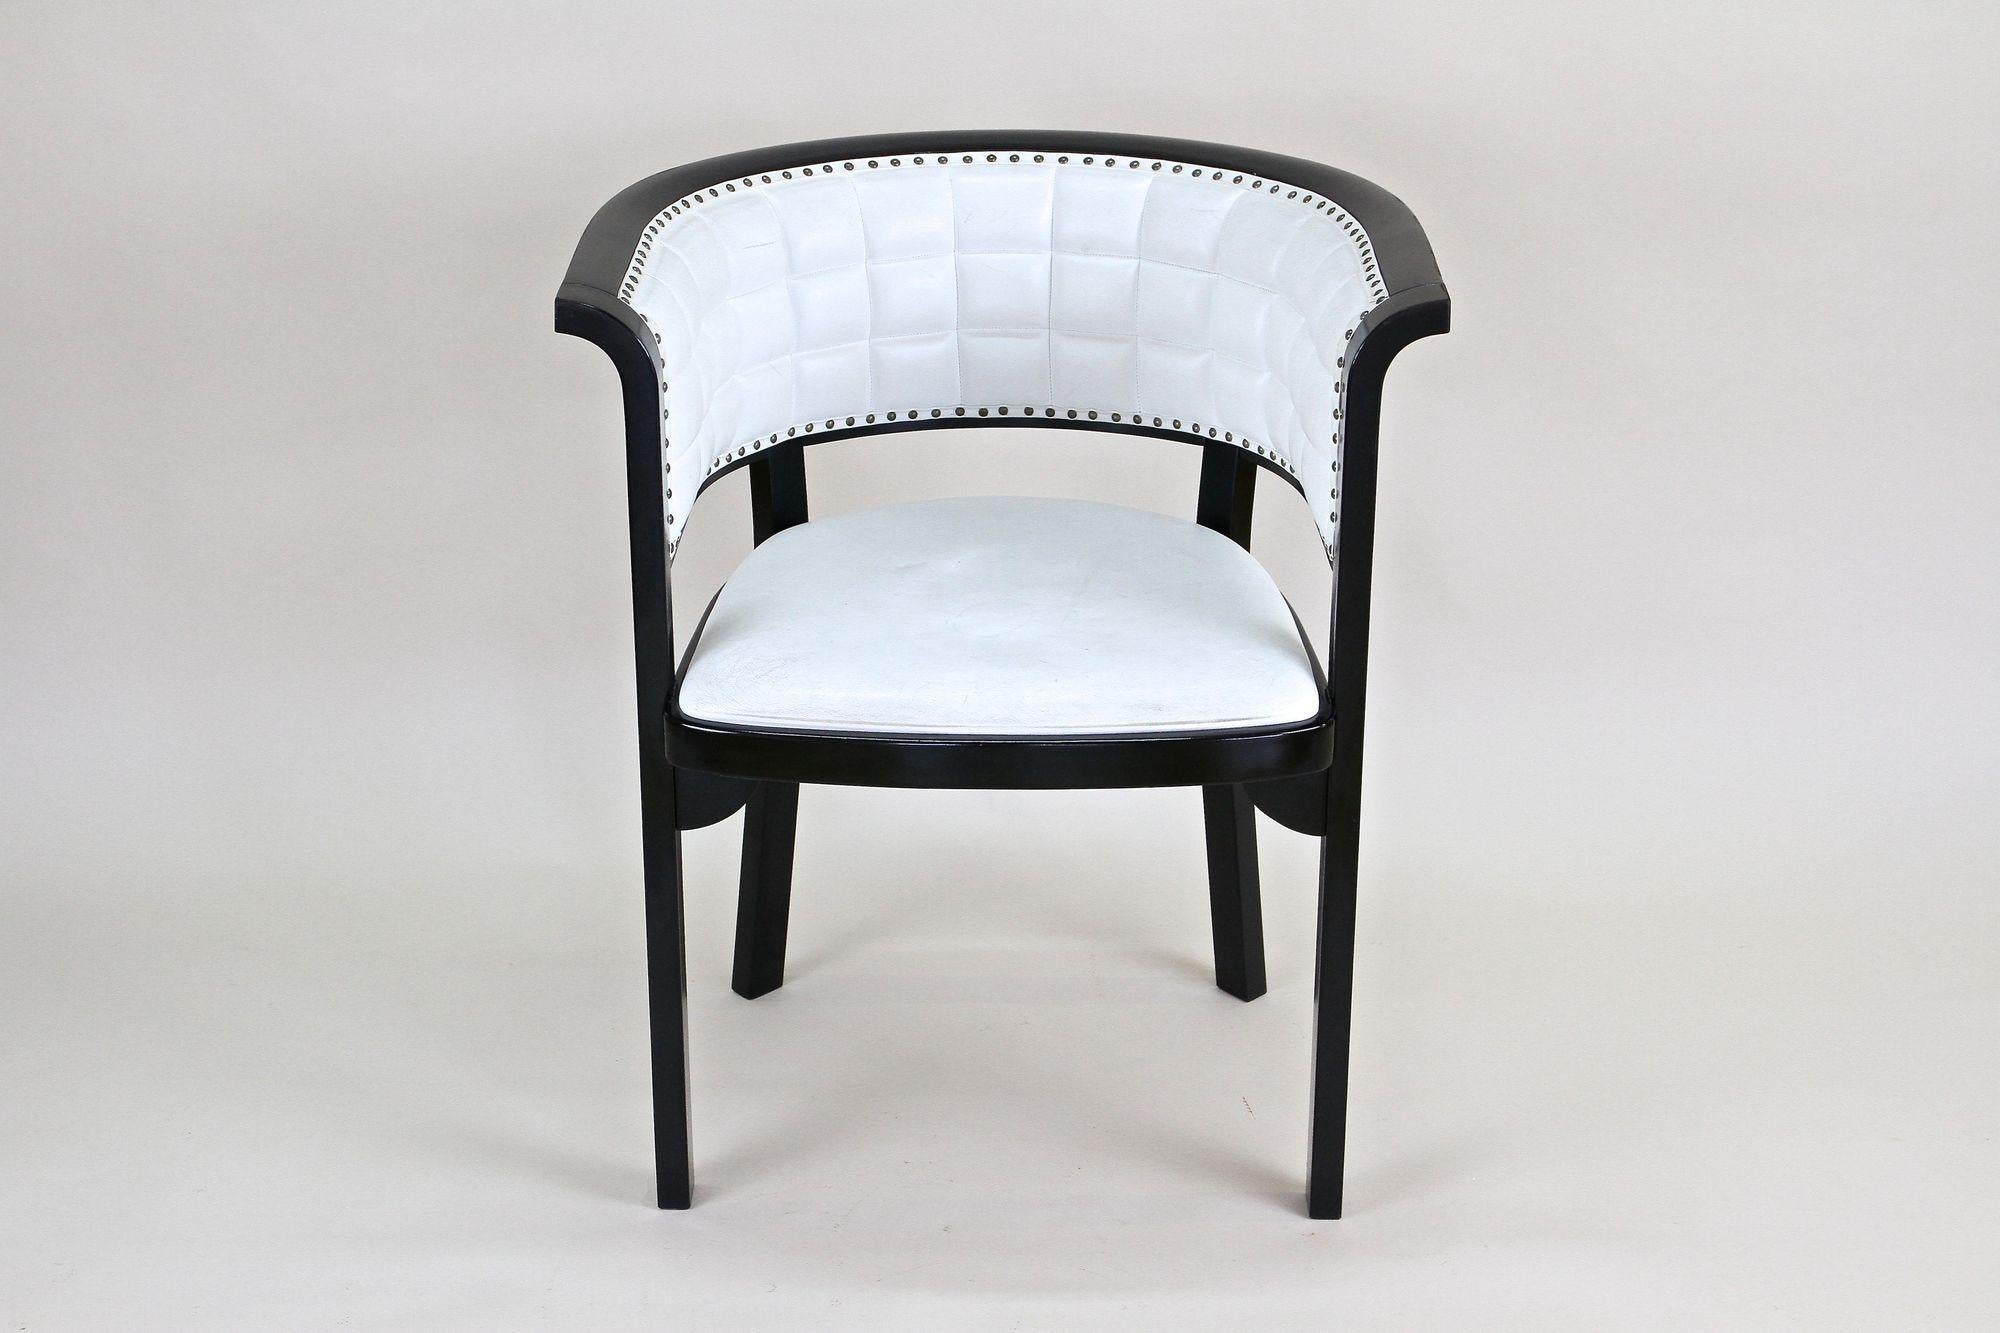 Exklusive Reedition des berühmten Thonet-Sessels aus dem 20. Jahrhundert, der ursprünglich von Marcel Kammerer zu Beginn des 20. Jahrhunderts um 1910 entworfen wurde. Dieser wunderschöne Sessel wurde von der berühmten Firma Thonet Wien um 1980